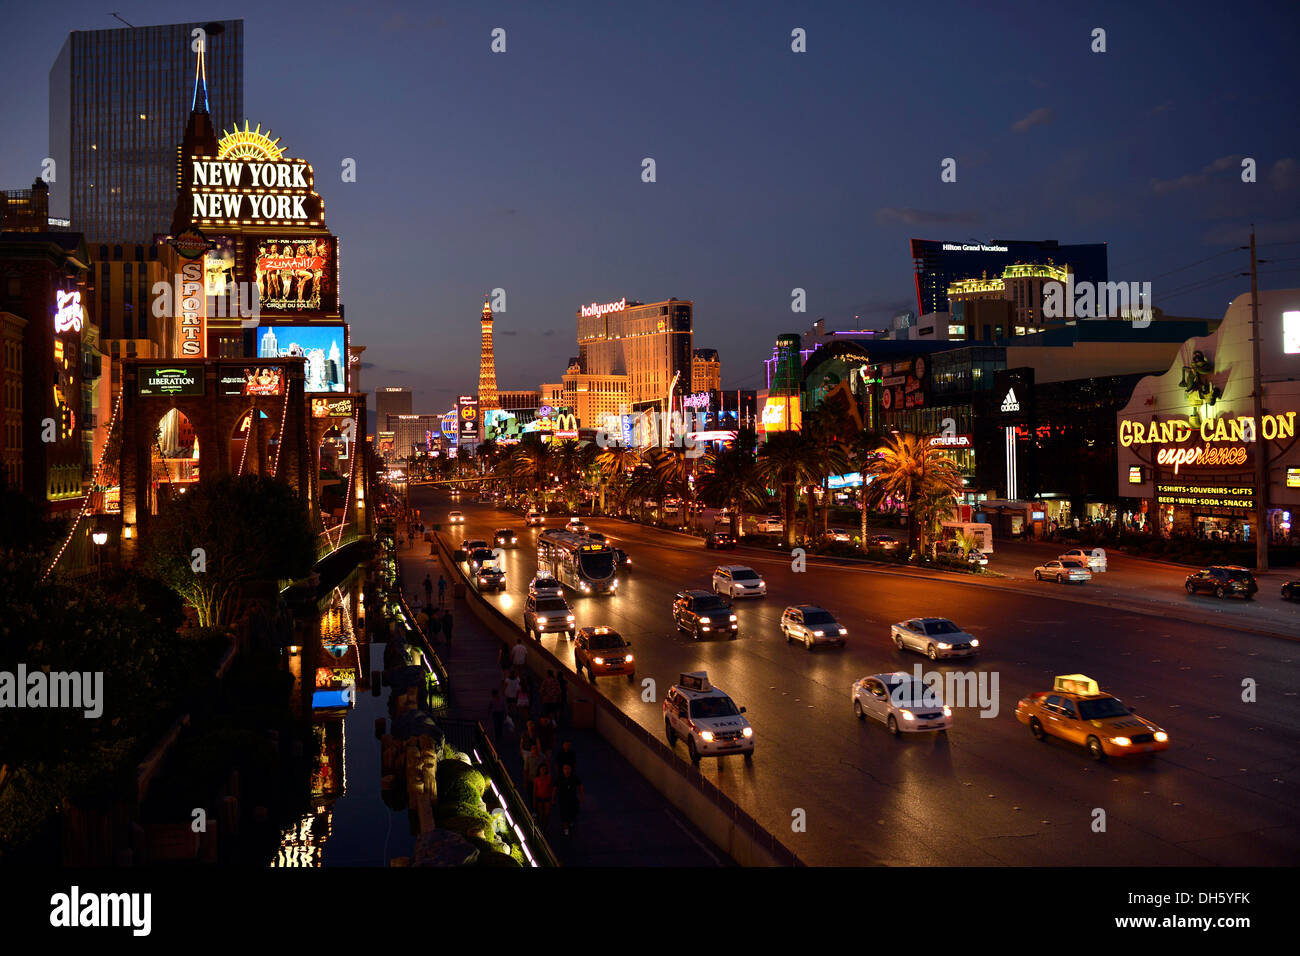 Escena nocturna, la tira, Planet Hollywood, hotel de lujo, el Cosmopolita, París, Treature Island, Nueva York, Nueva York, Las Vegas Foto de stock